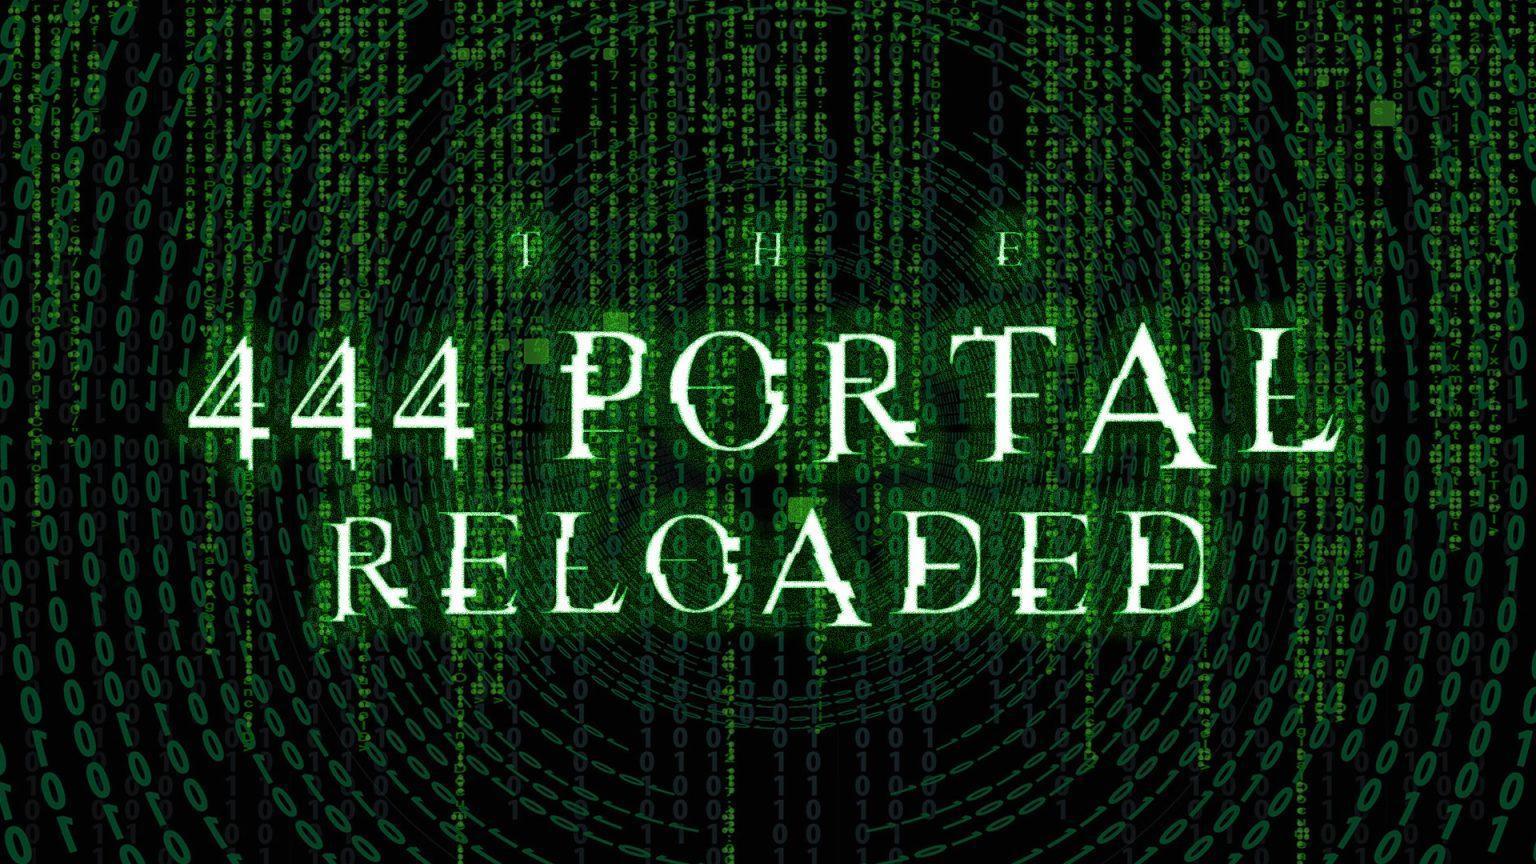 portal reloaded 4